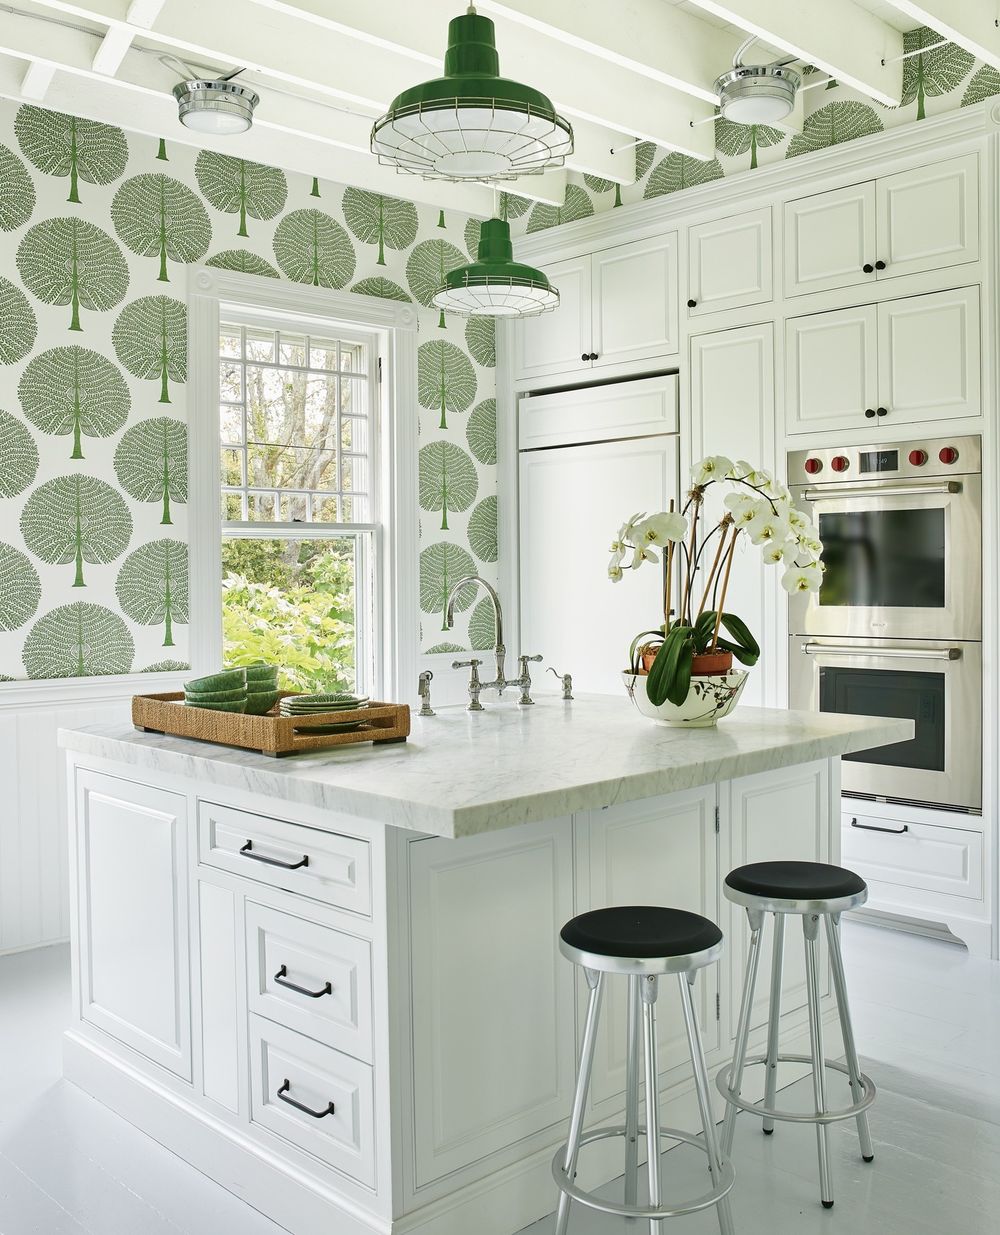 Green kitchen wallpaper ideas Hamptons House Design